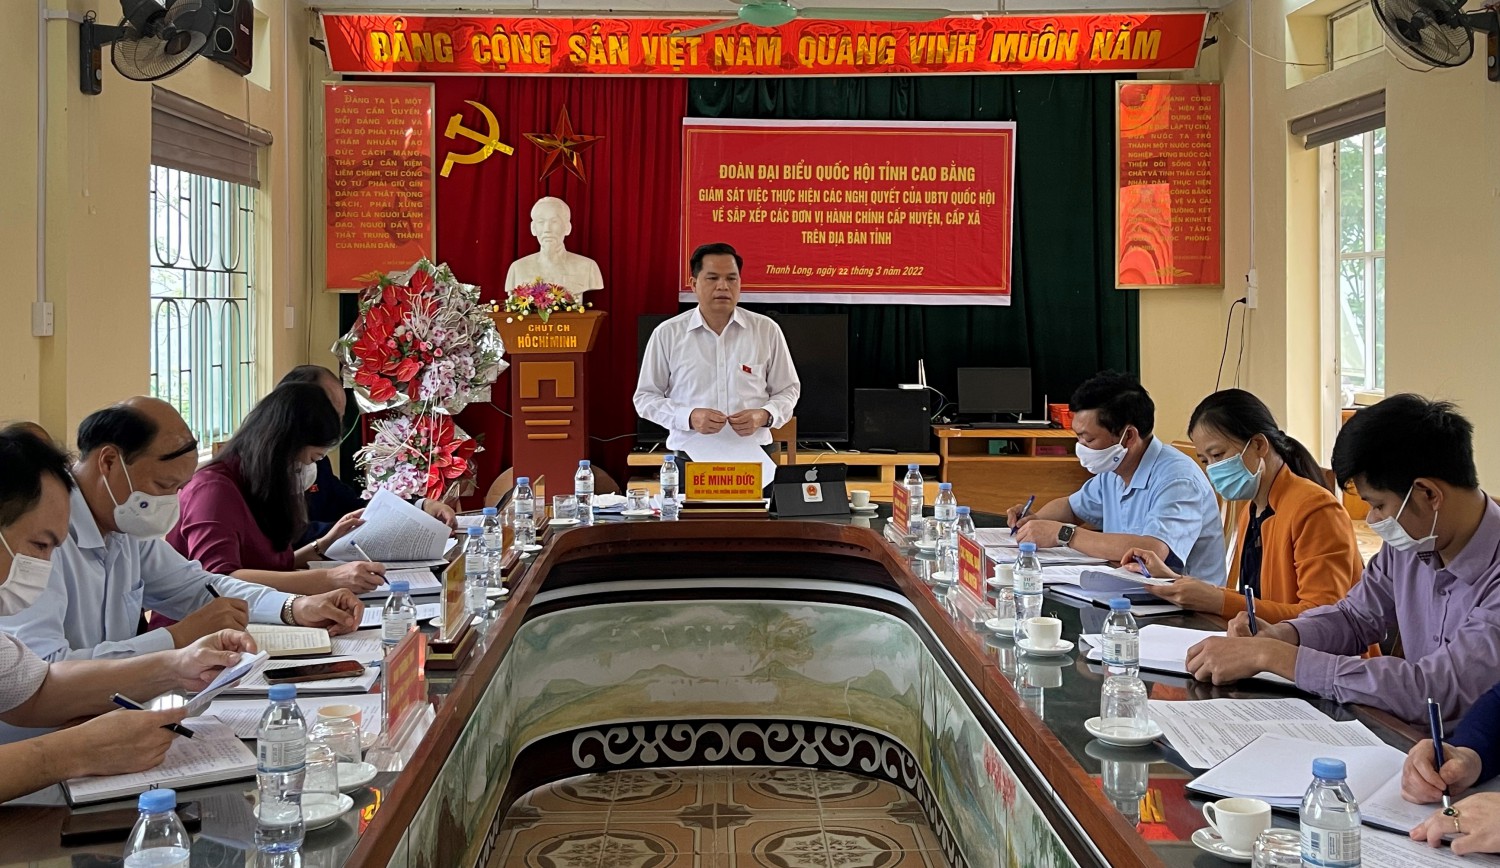 Phó trưởng đoàn chuyên trách Đoàn đại biểu Quốc hội tỉnh Bế Minh Đức phát biểu kết luận buổi giám sát.